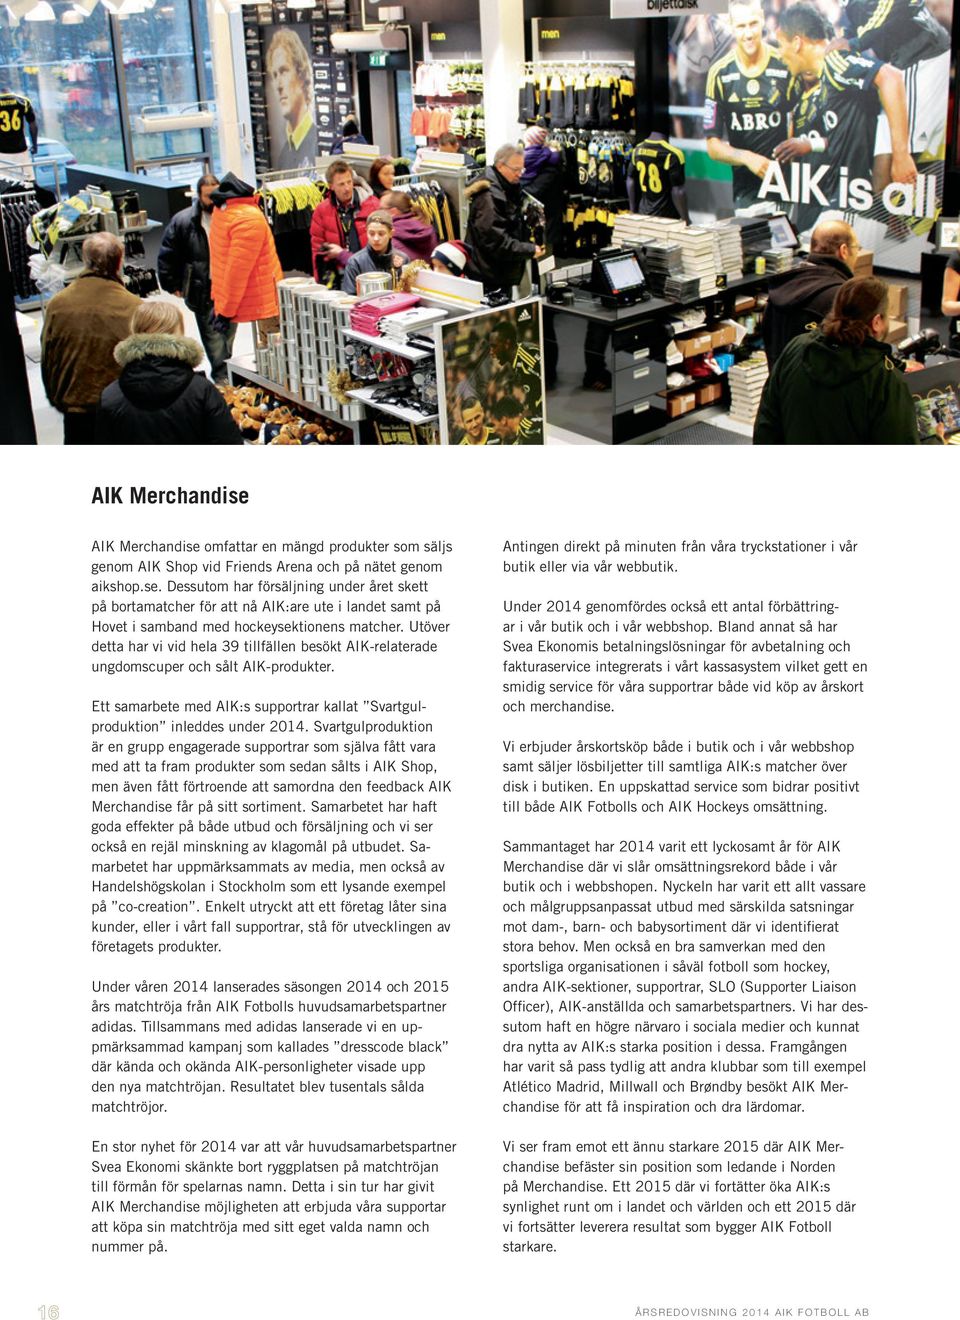 Svartgulproduktion är en grupp engagerade supportrar som själva fått vara med att ta fram produkter som sedan sålts i AIK Shop, men även fått förtroende att samordna den feedback AIK Merchandise får